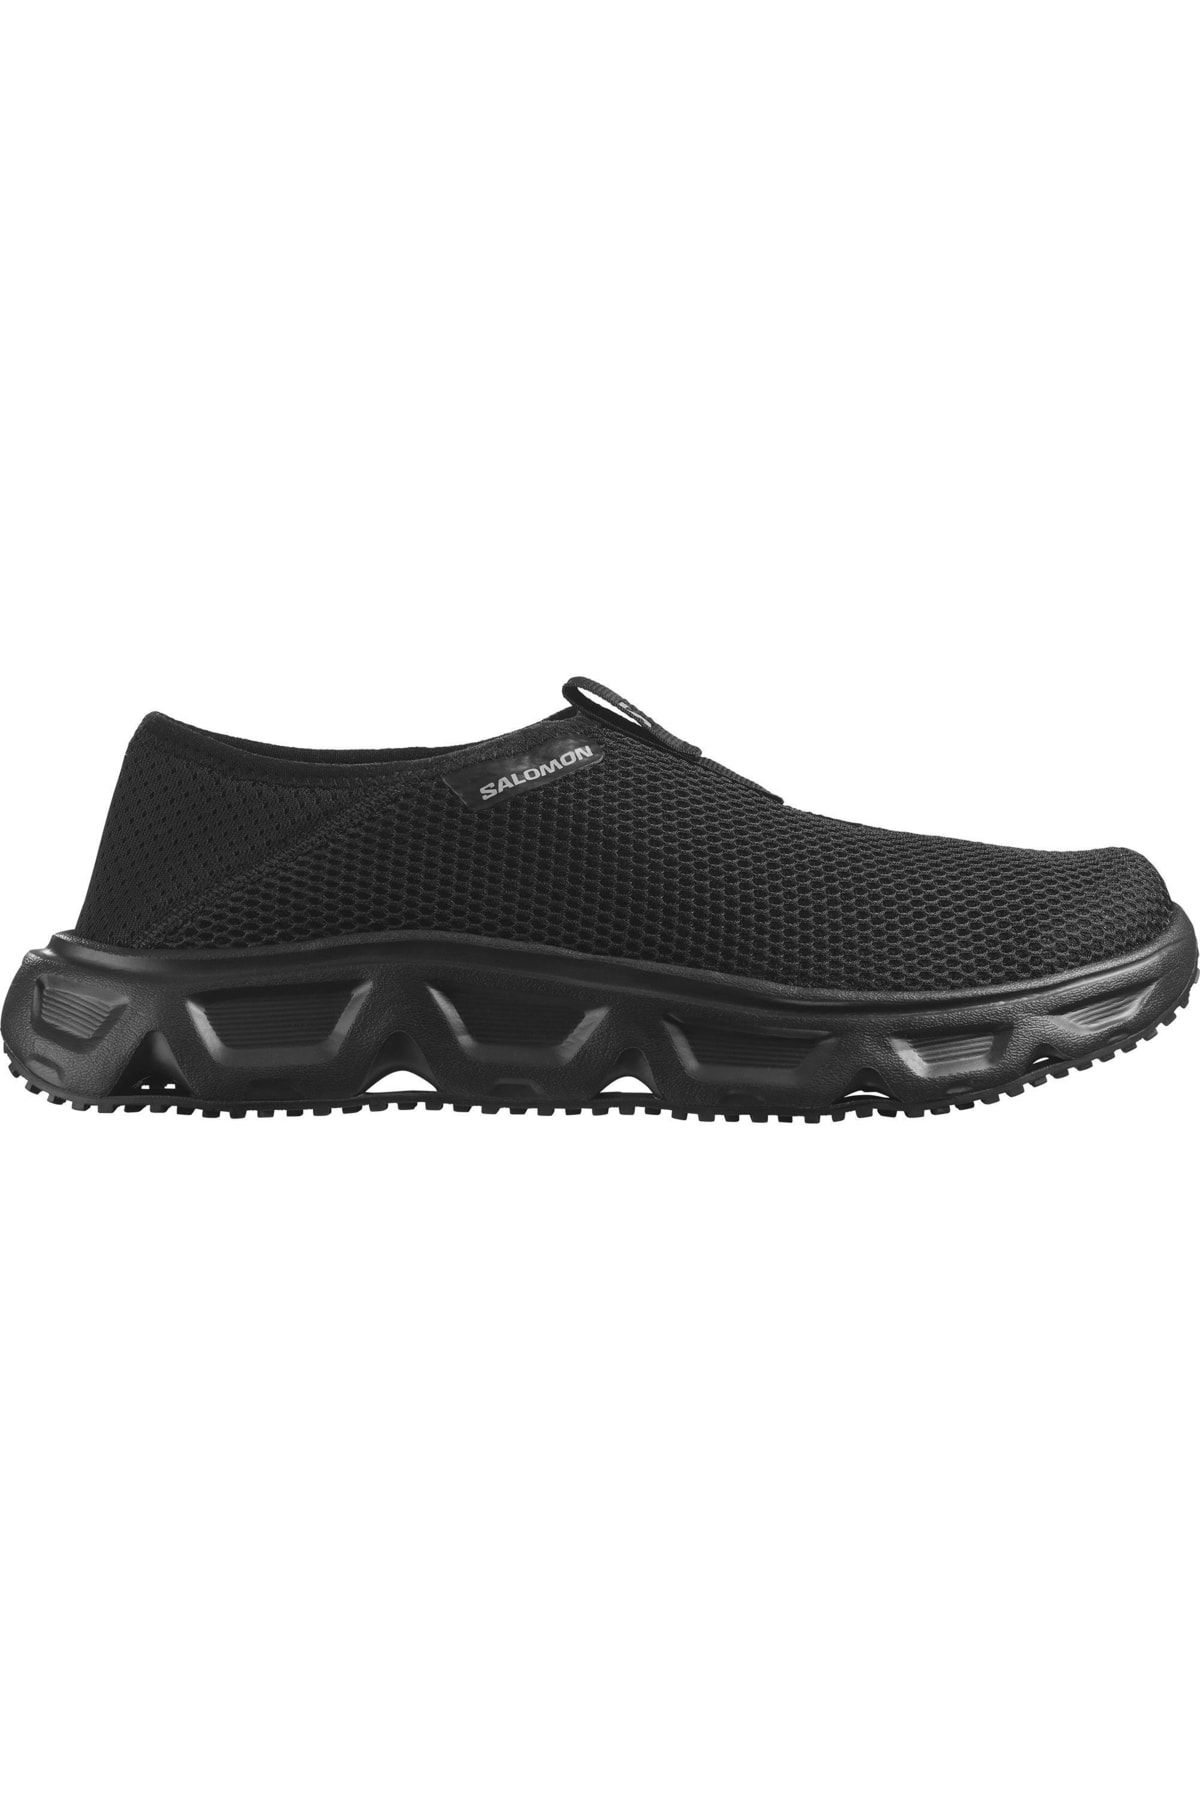 Salomon Reelax Moc 6.0 کفش در فضای باز مردان سیاه L47111500